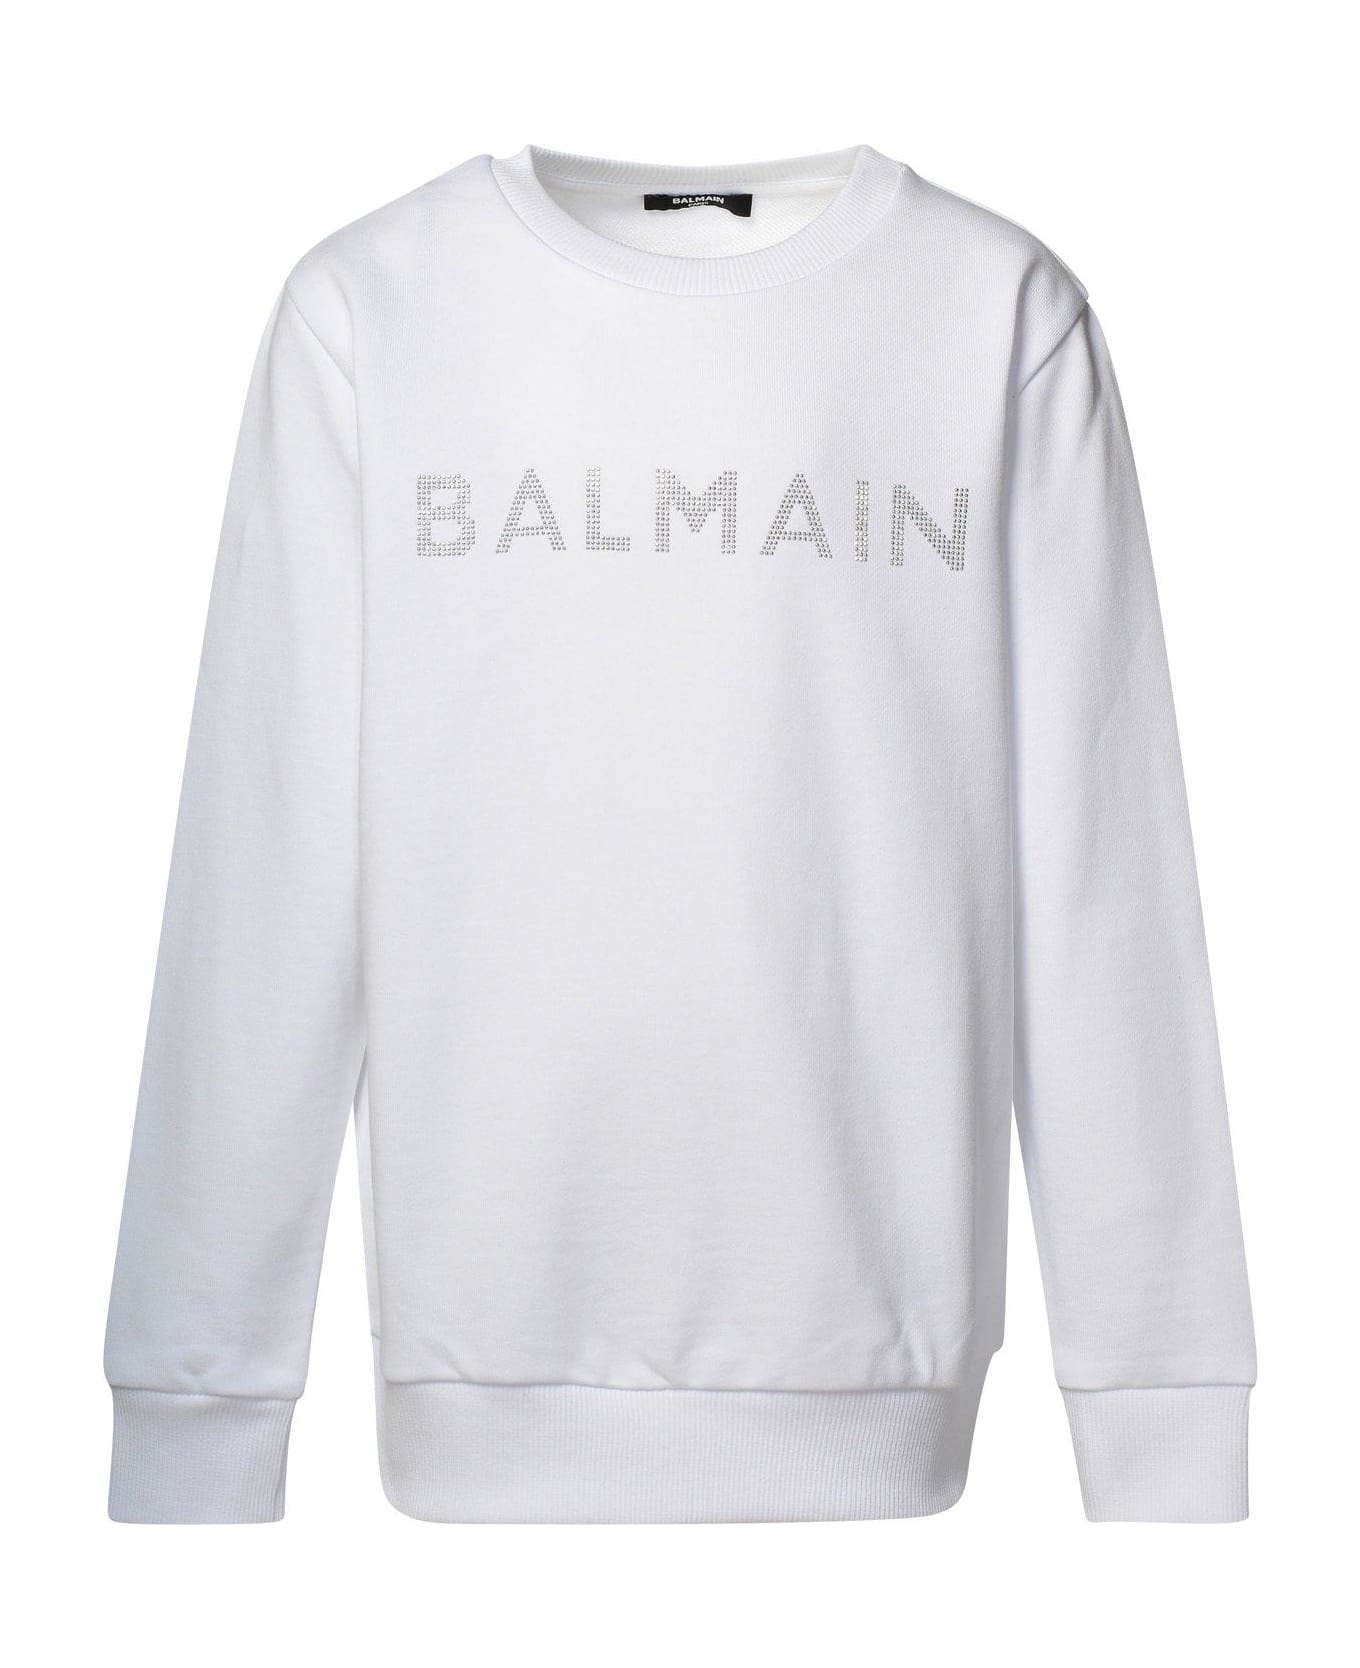 Balmain Logo Embellished Crewneck Sweatshirt - White/silver